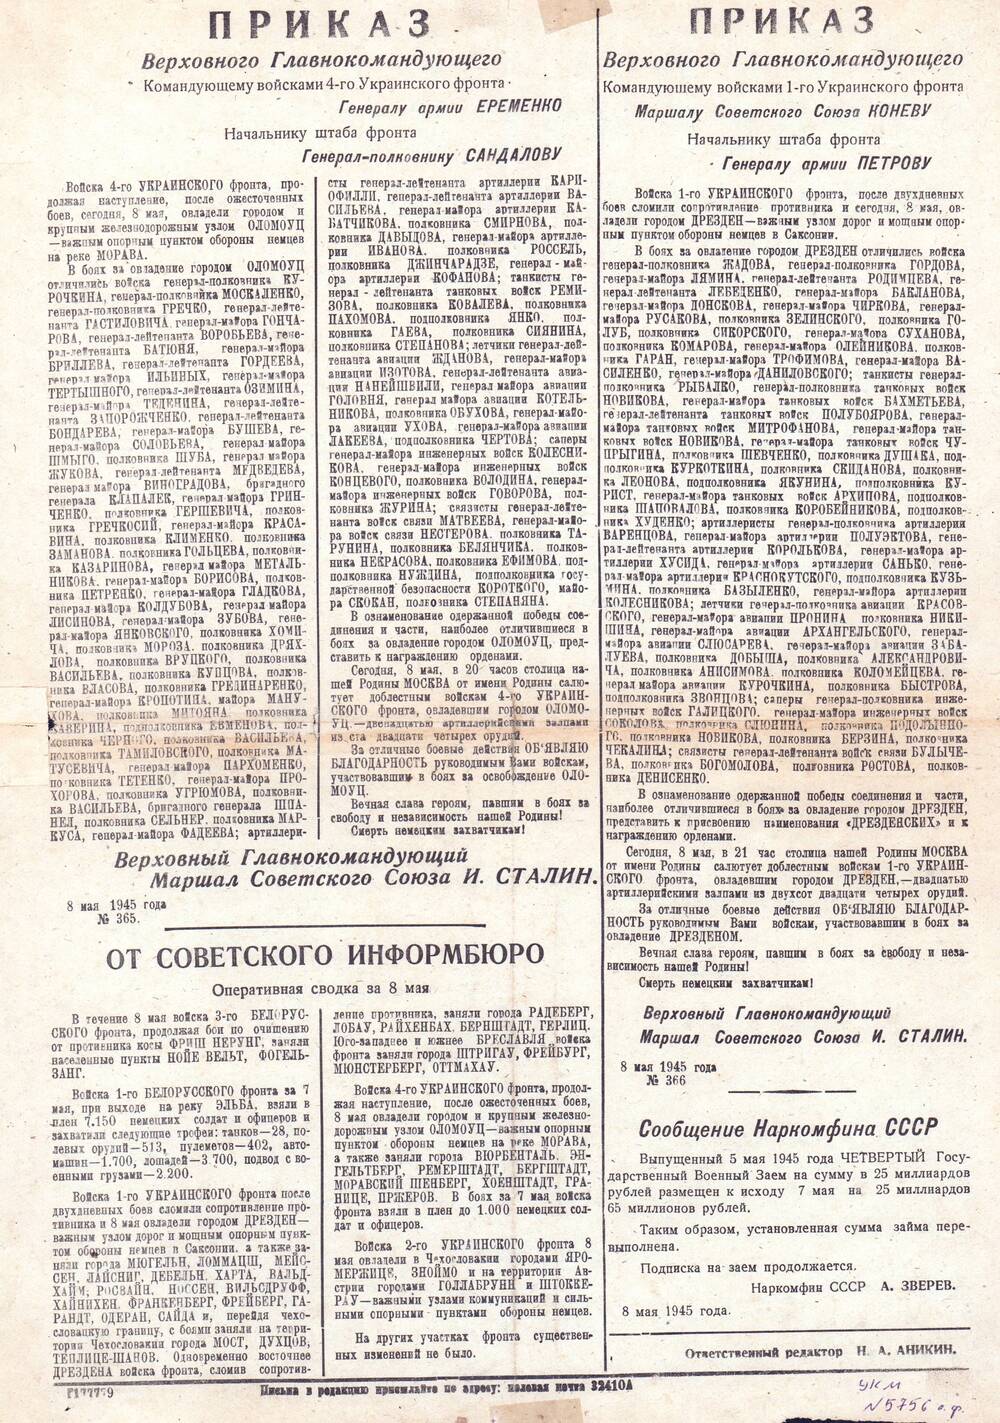 Газета: На защиту Родины. №118, от 9 мая 1945 г.